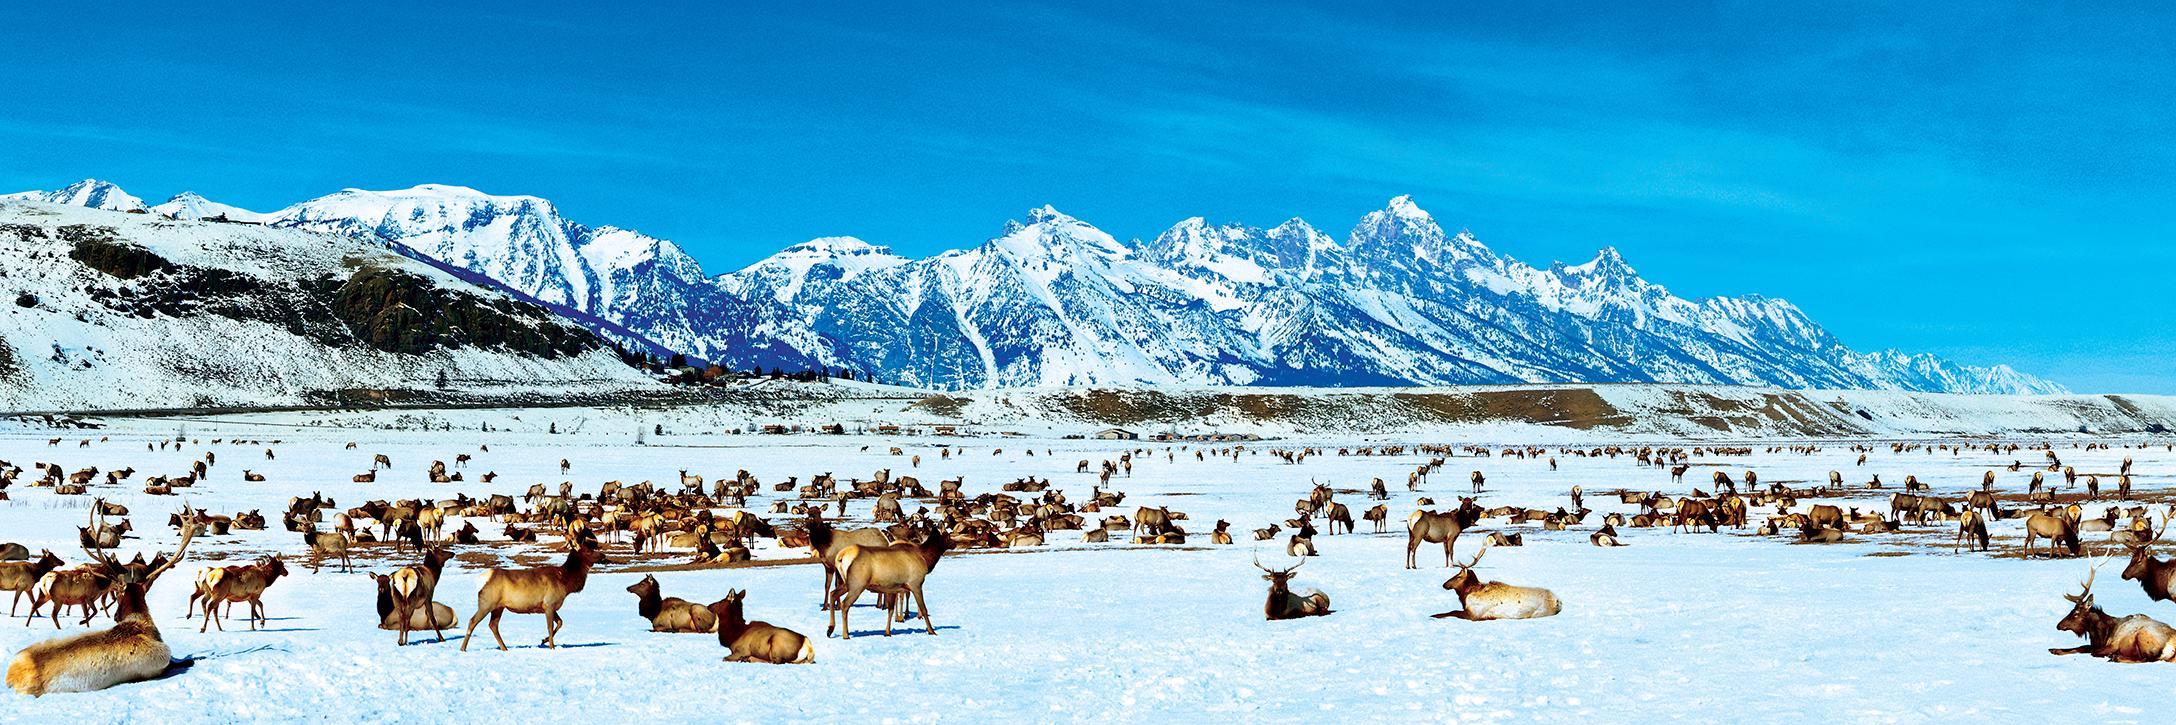 Puzzle Elk Refuge Wyoming